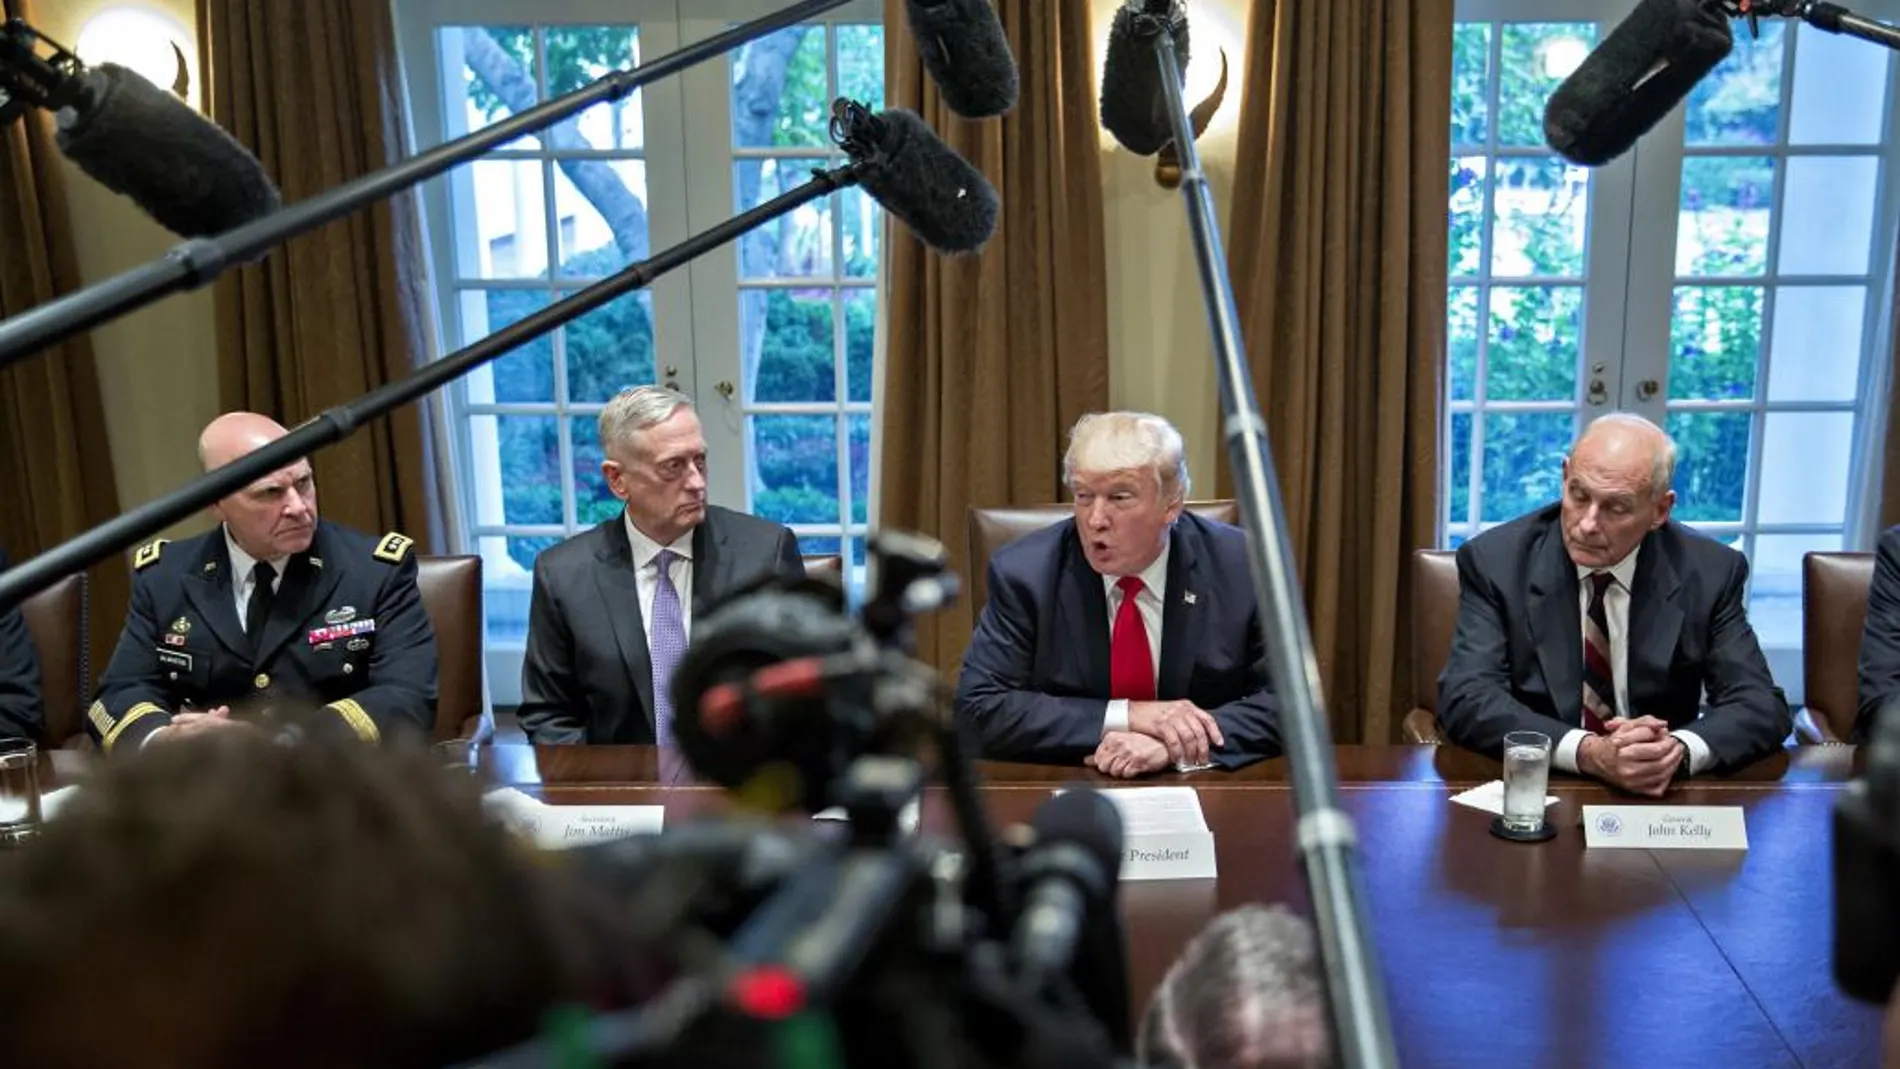 El presidente de los Estados Unidos, Donald J. Trump (c-d), habla junto al jefe de Gabinete de la Casa Blanca, John Kelly (d); el asesor de seguridad nacional, H.R. McMaster (i), y el secretario de Defensa, James Mattis (c-i), durante una reunión con altos líderes militares en la Sala del Gabinete de la Casa Blanca, en Washington, DC